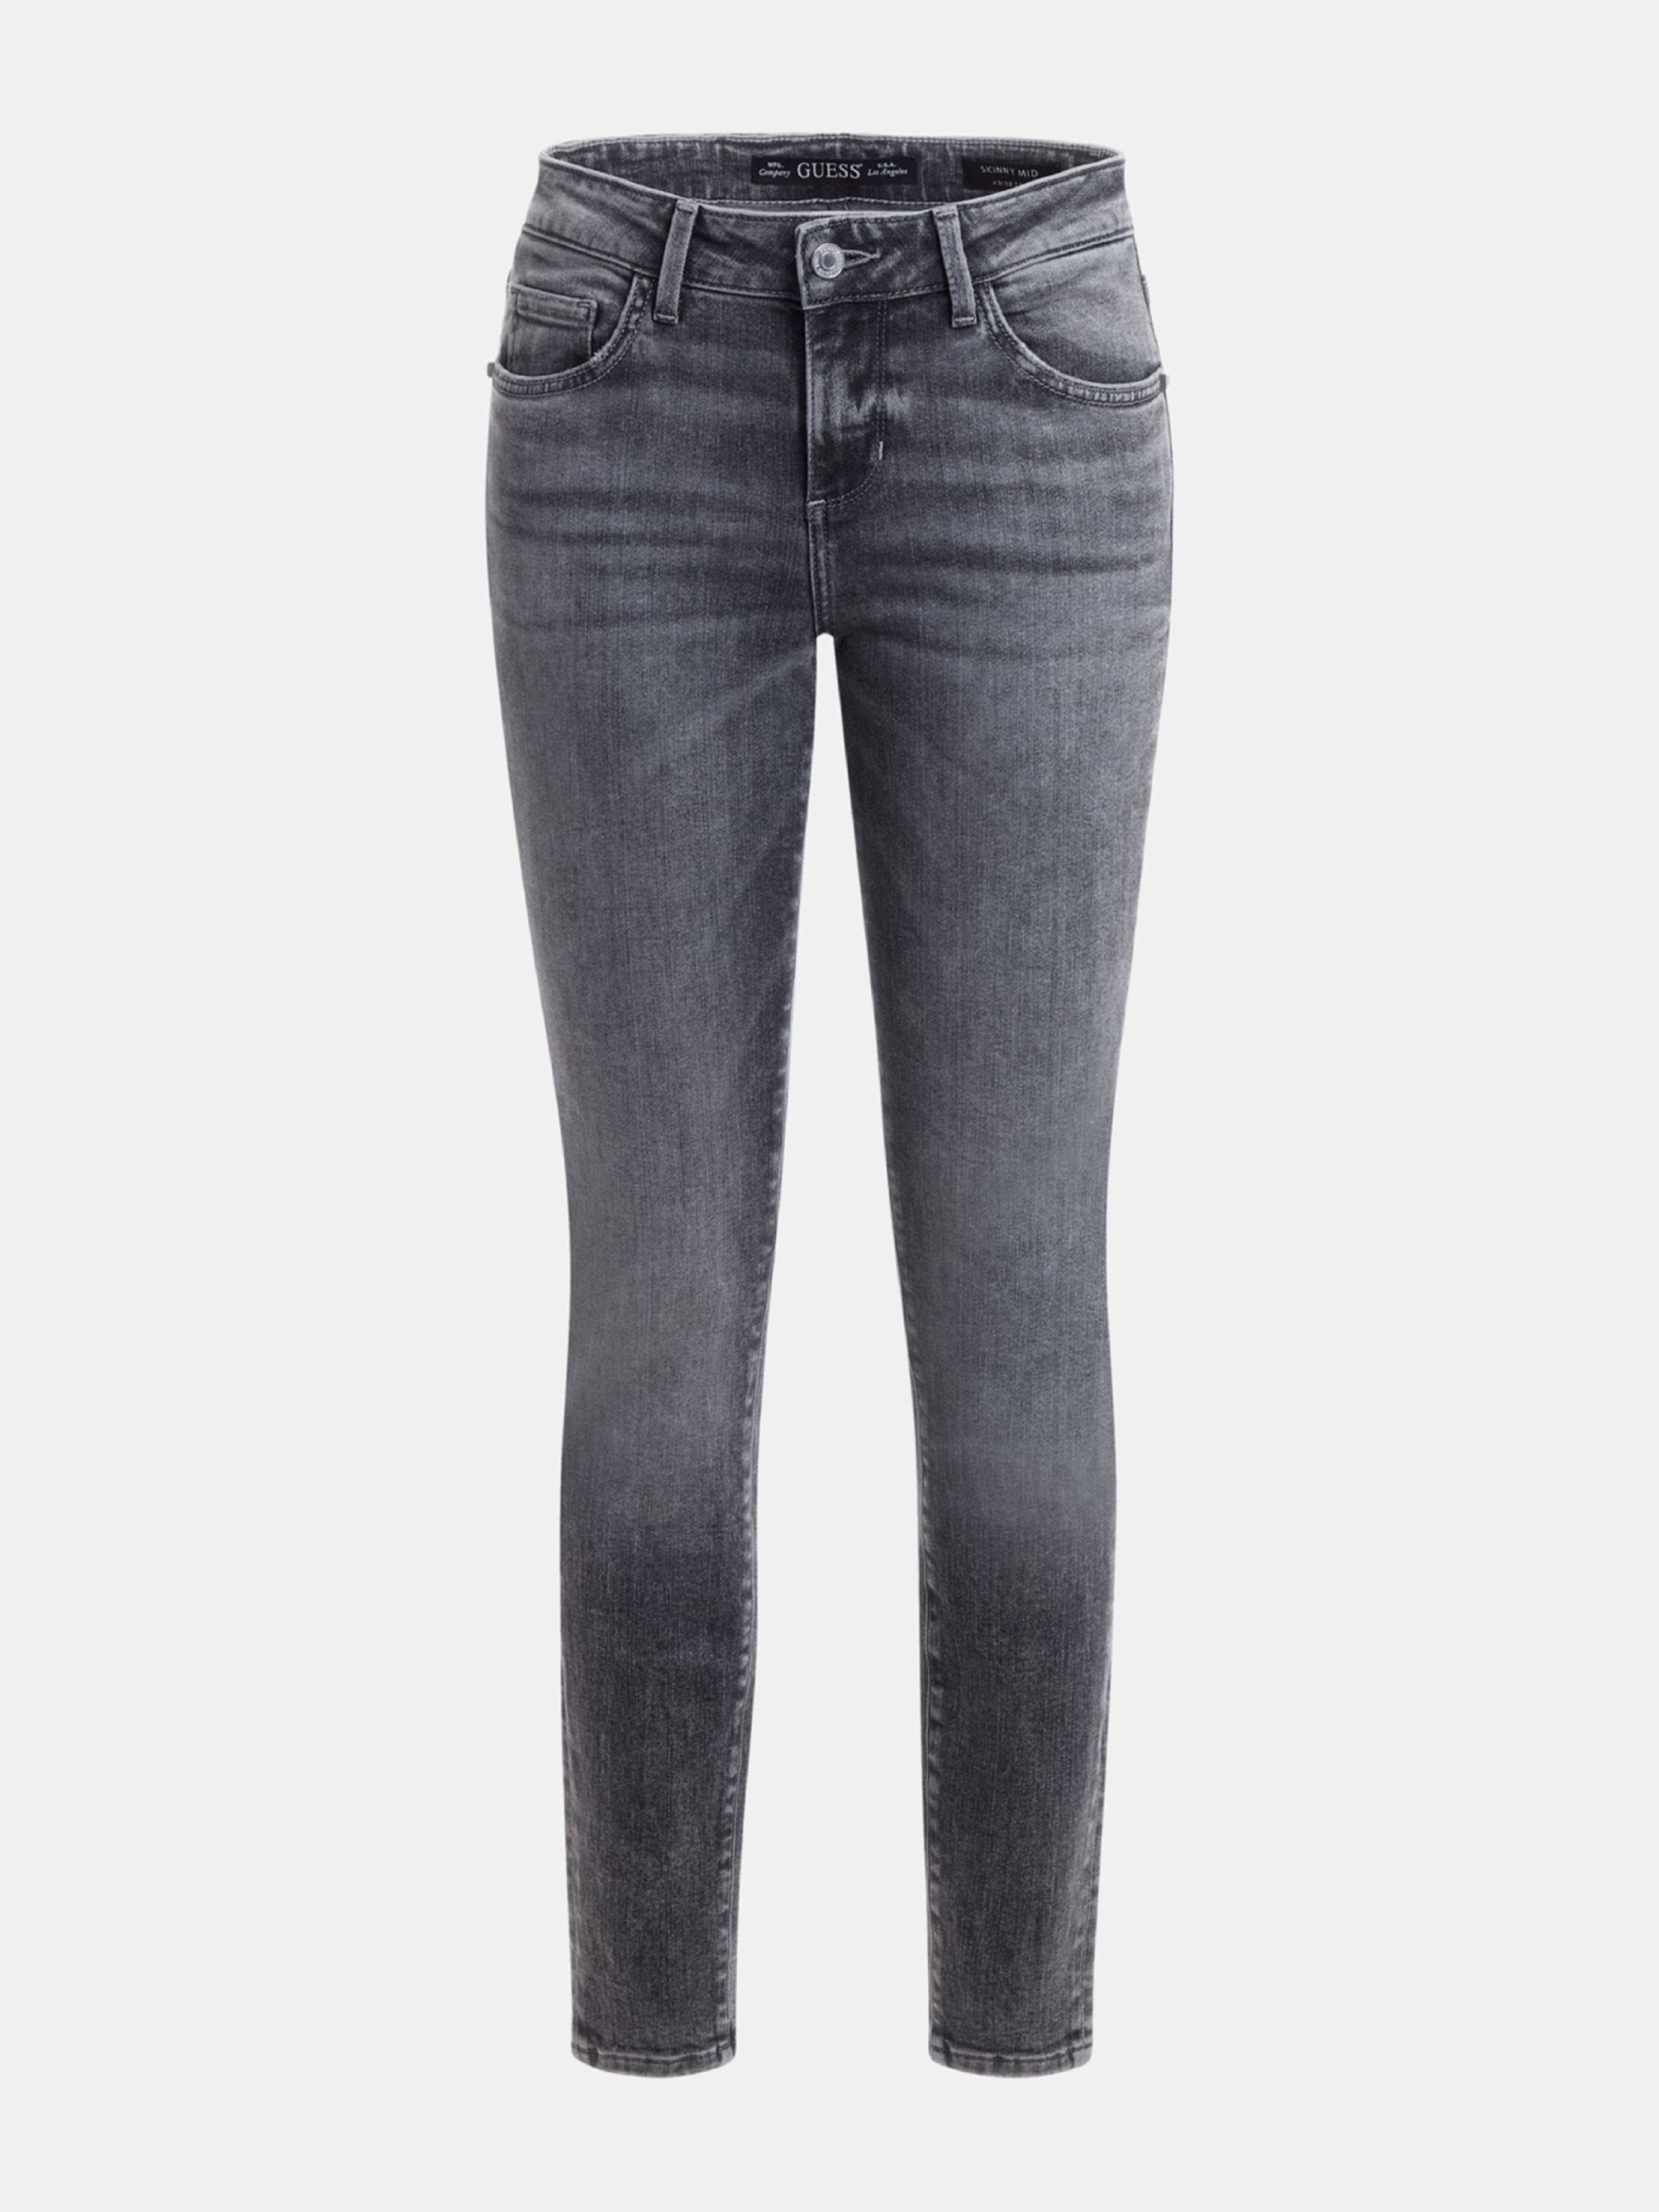 Guess dámské šedé džíny - 28 (SNGY)